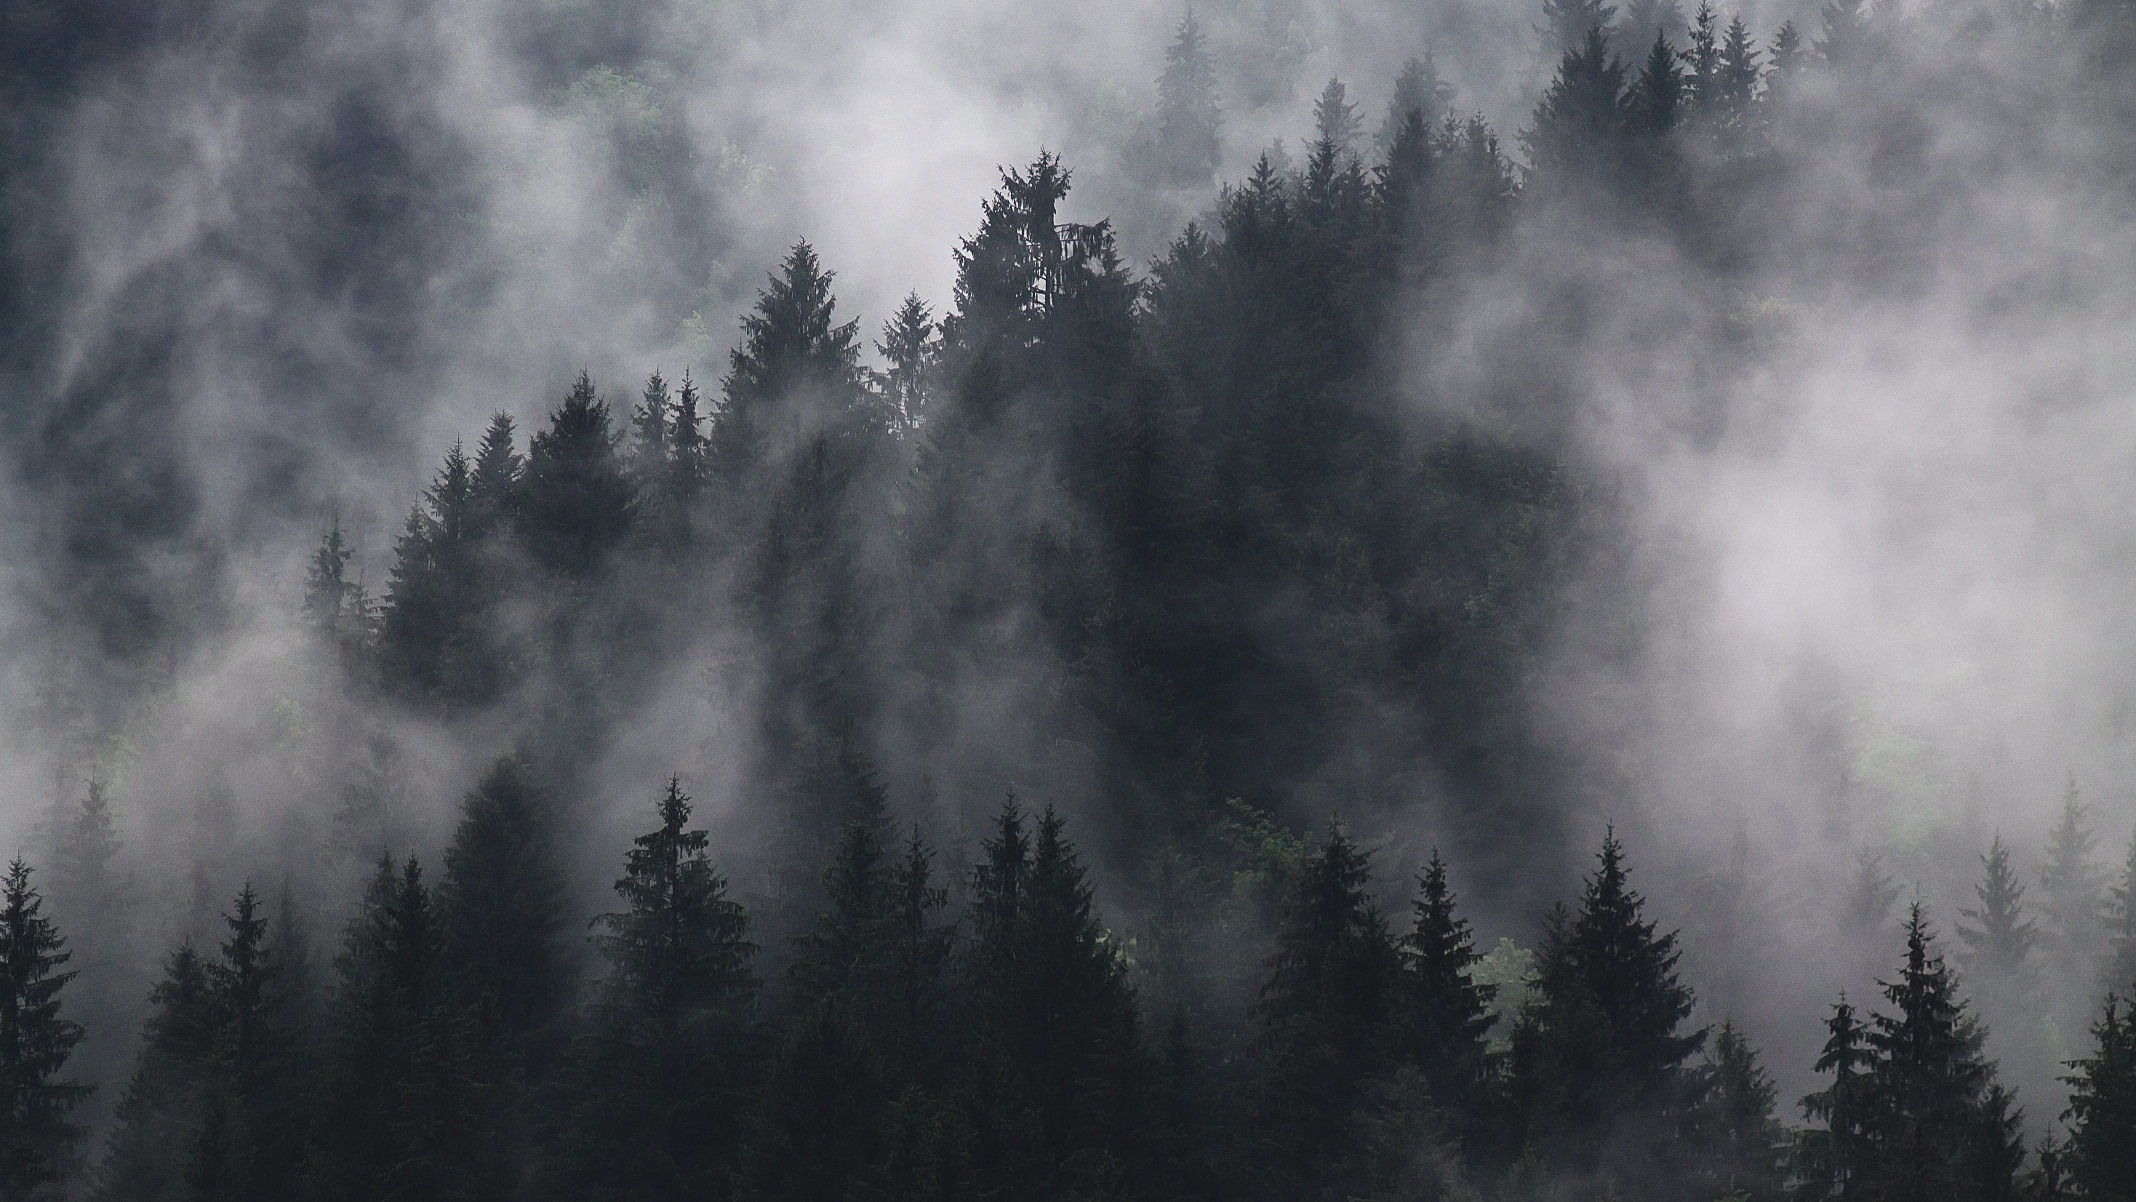 papier peint forêt brumeuse,épinette noire à feuilles courtes,brouillard,la nature,brouillard,ciel